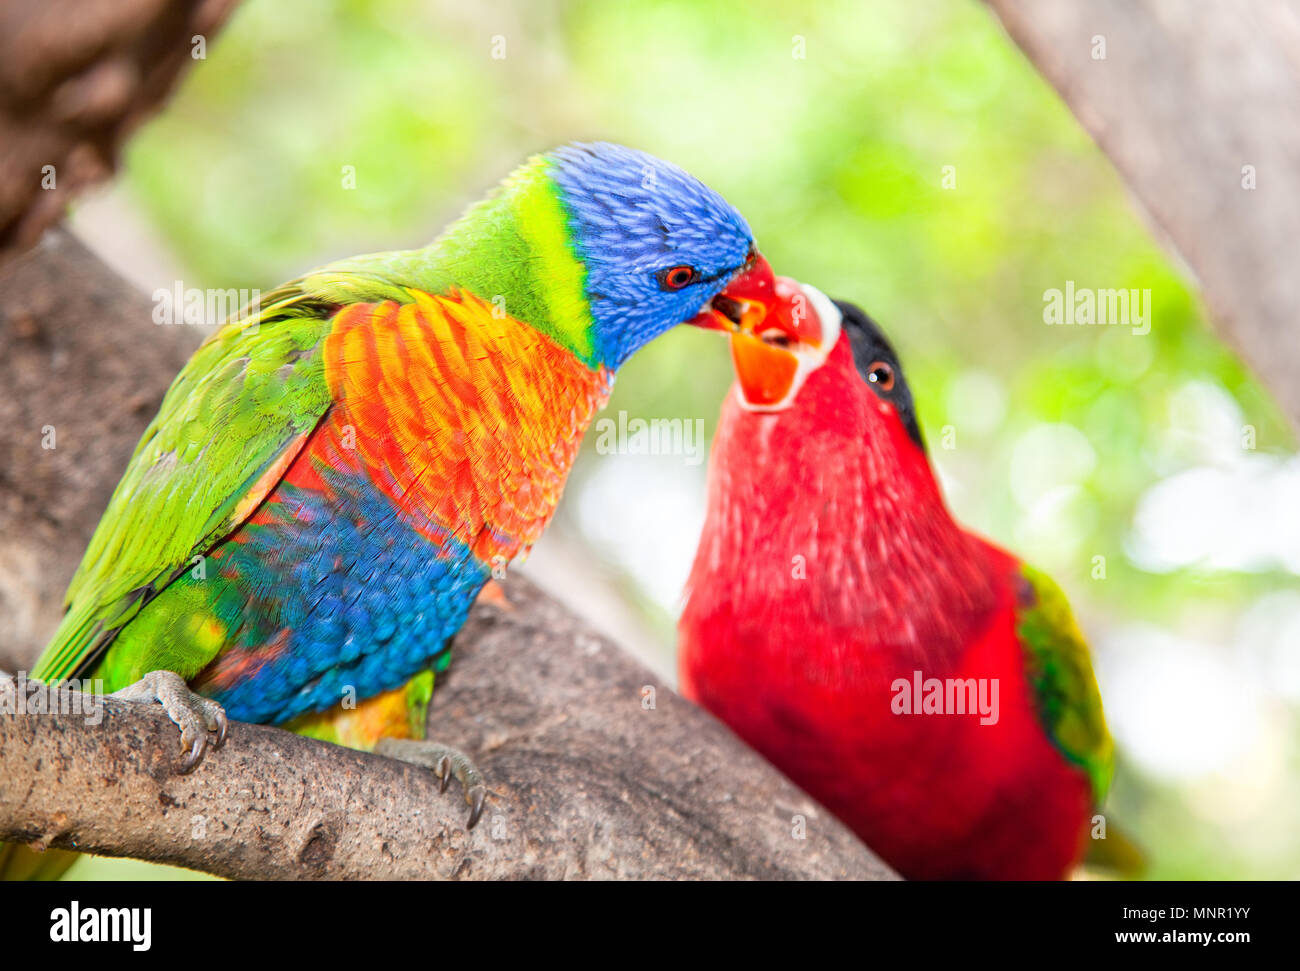 Australian rainbow lorikeets. Australia beautiful birds kissing on branch Stock Photo